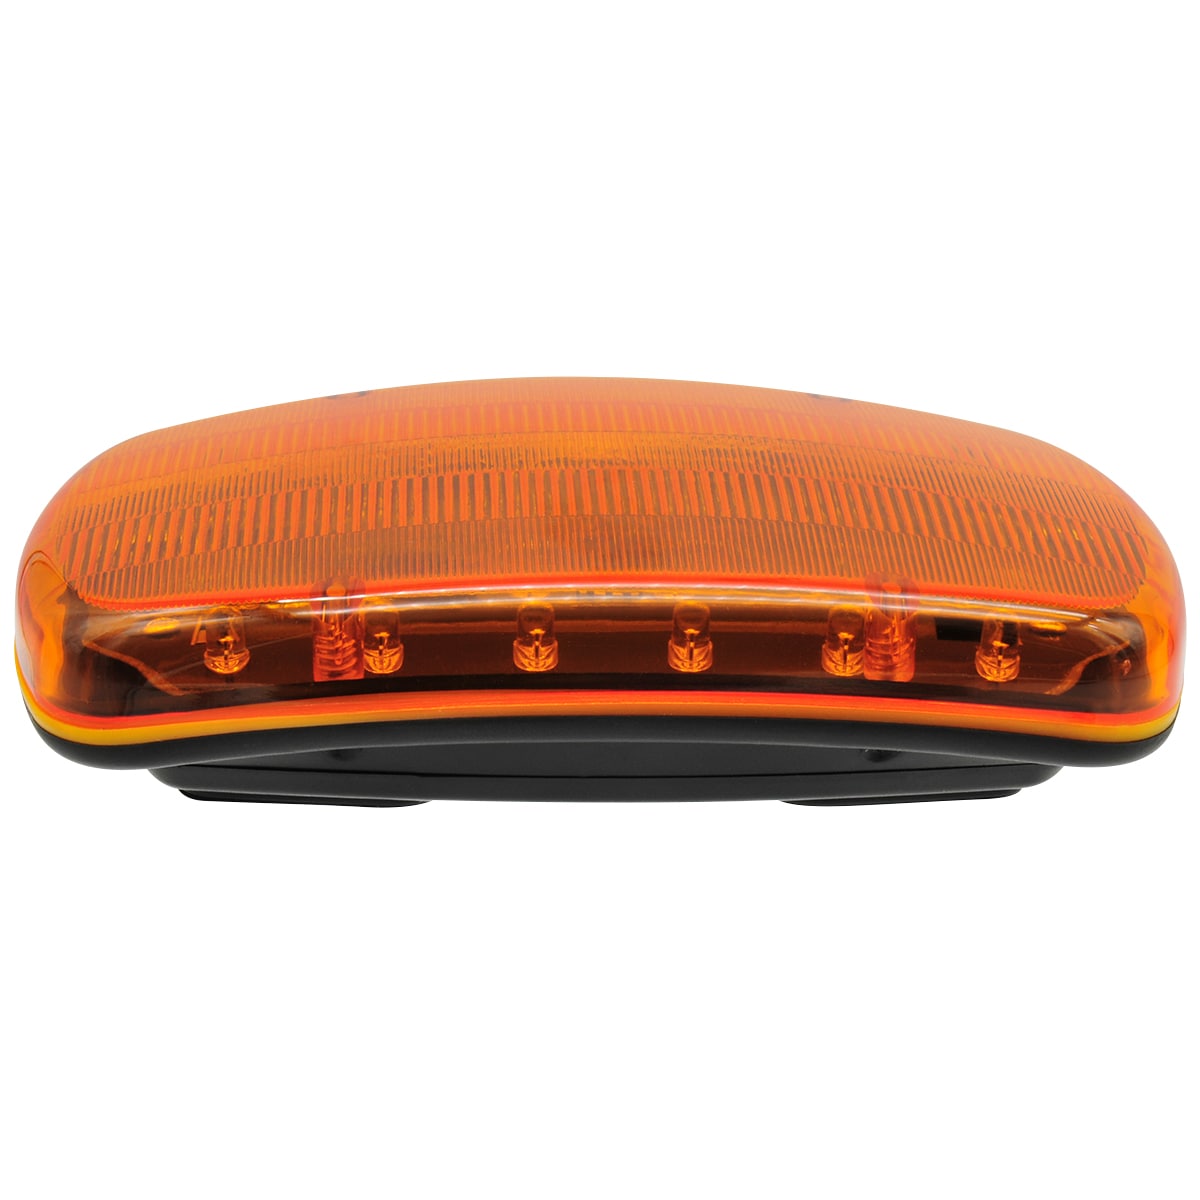 Magnetic AutoControl LED Flashing Orange Light (Installed) - BLED01